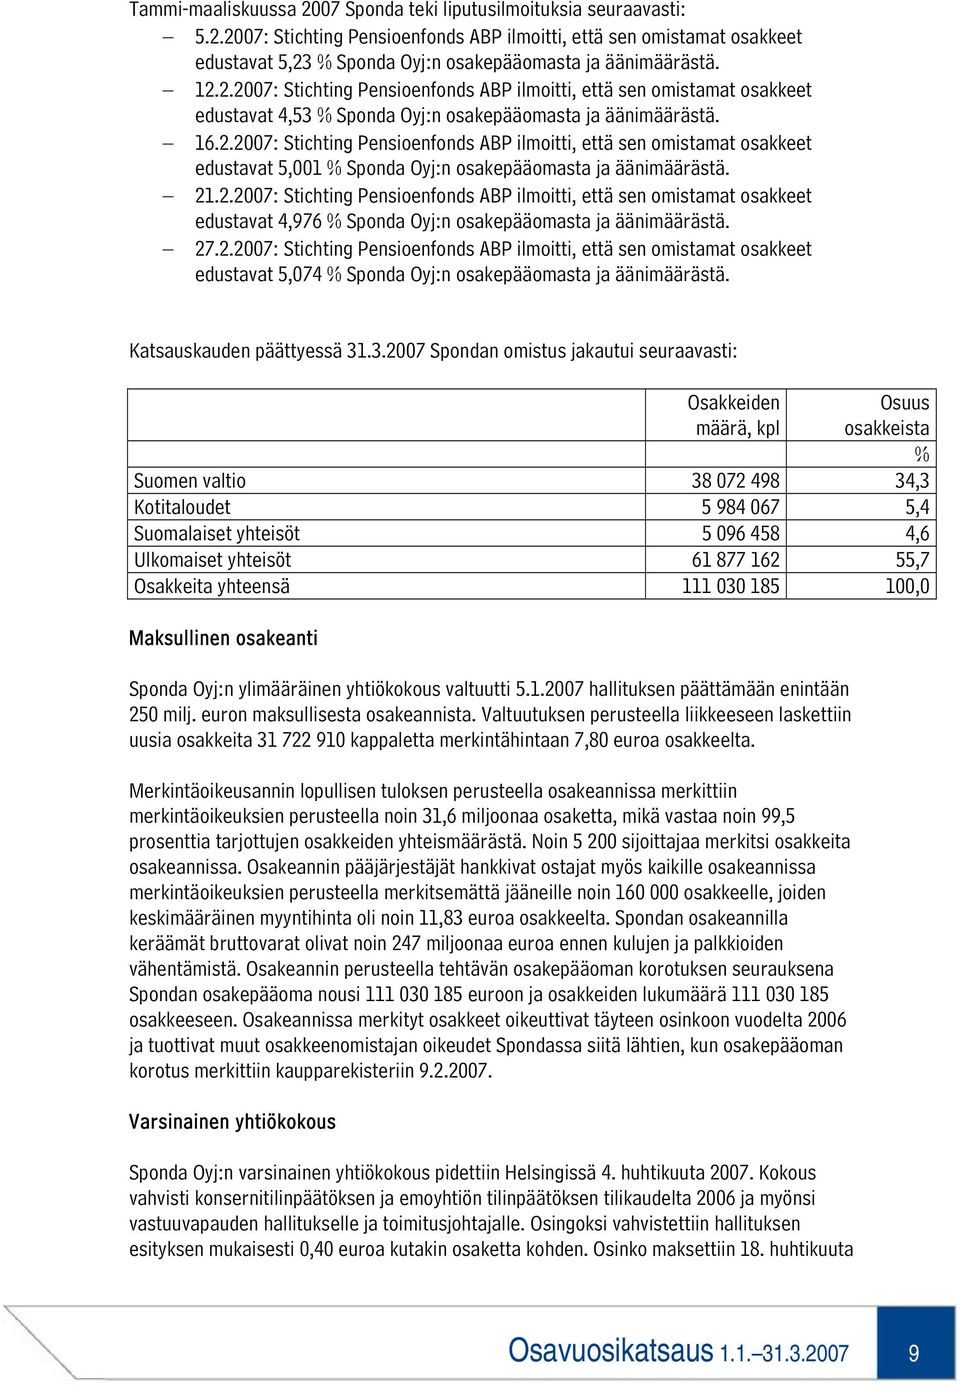 21.2.2007: Stichting Pensioenfonds ABP ilmoitti, että sen omistamat osakkeet edustavat 4,976 % Sponda Oyj:n osakepääomasta ja äänimäärästä. 27.2.2007: Stichting Pensioenfonds ABP ilmoitti, että sen omistamat osakkeet edustavat 5,074 % Sponda Oyj:n osakepääomasta ja äänimäärästä.